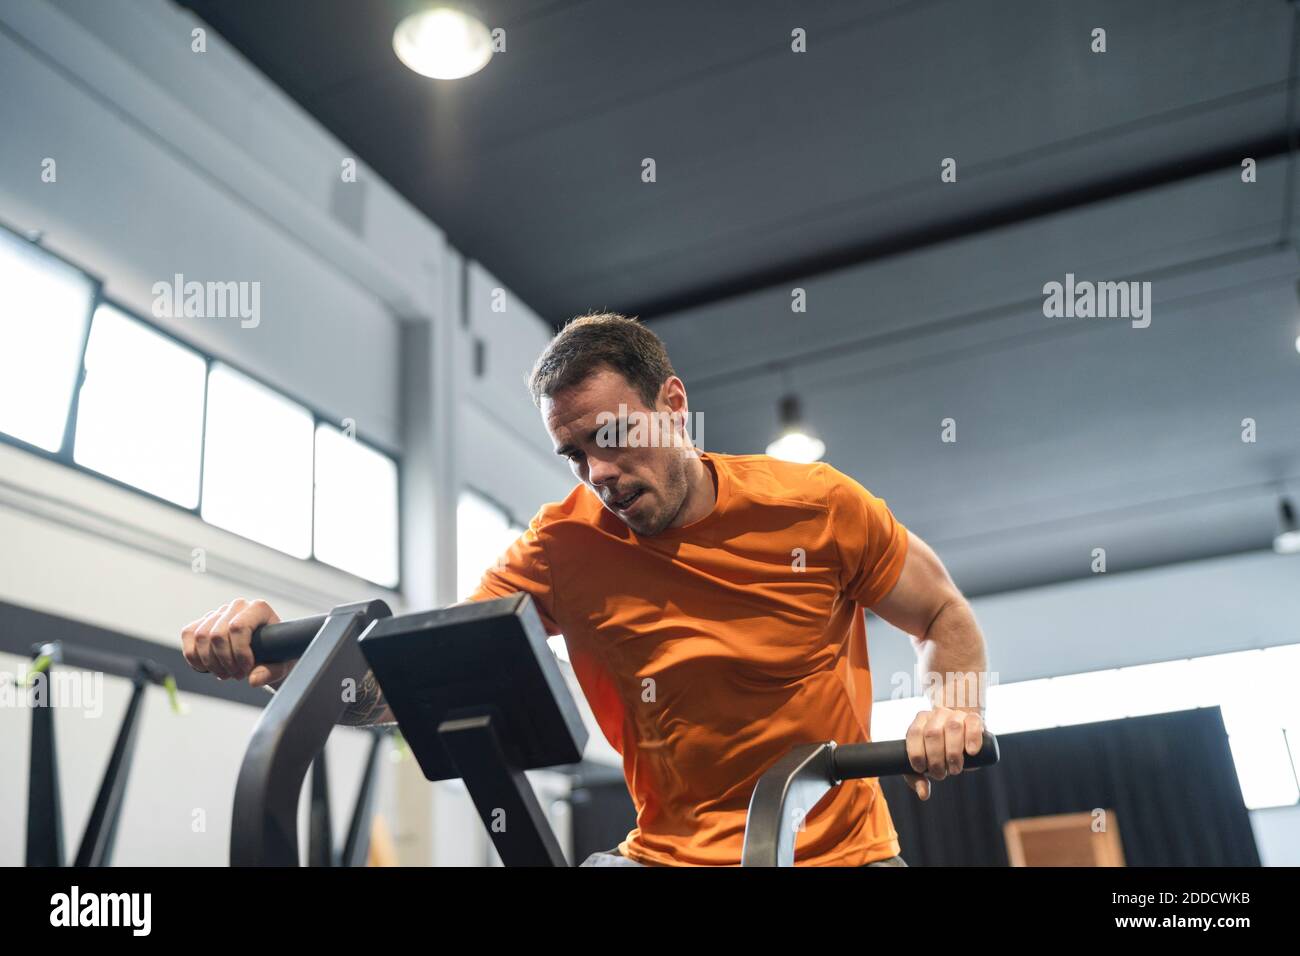 Athlète masculin s'entraînant sur l'équipement d'exercice dans la salle de gym Banque D'Images